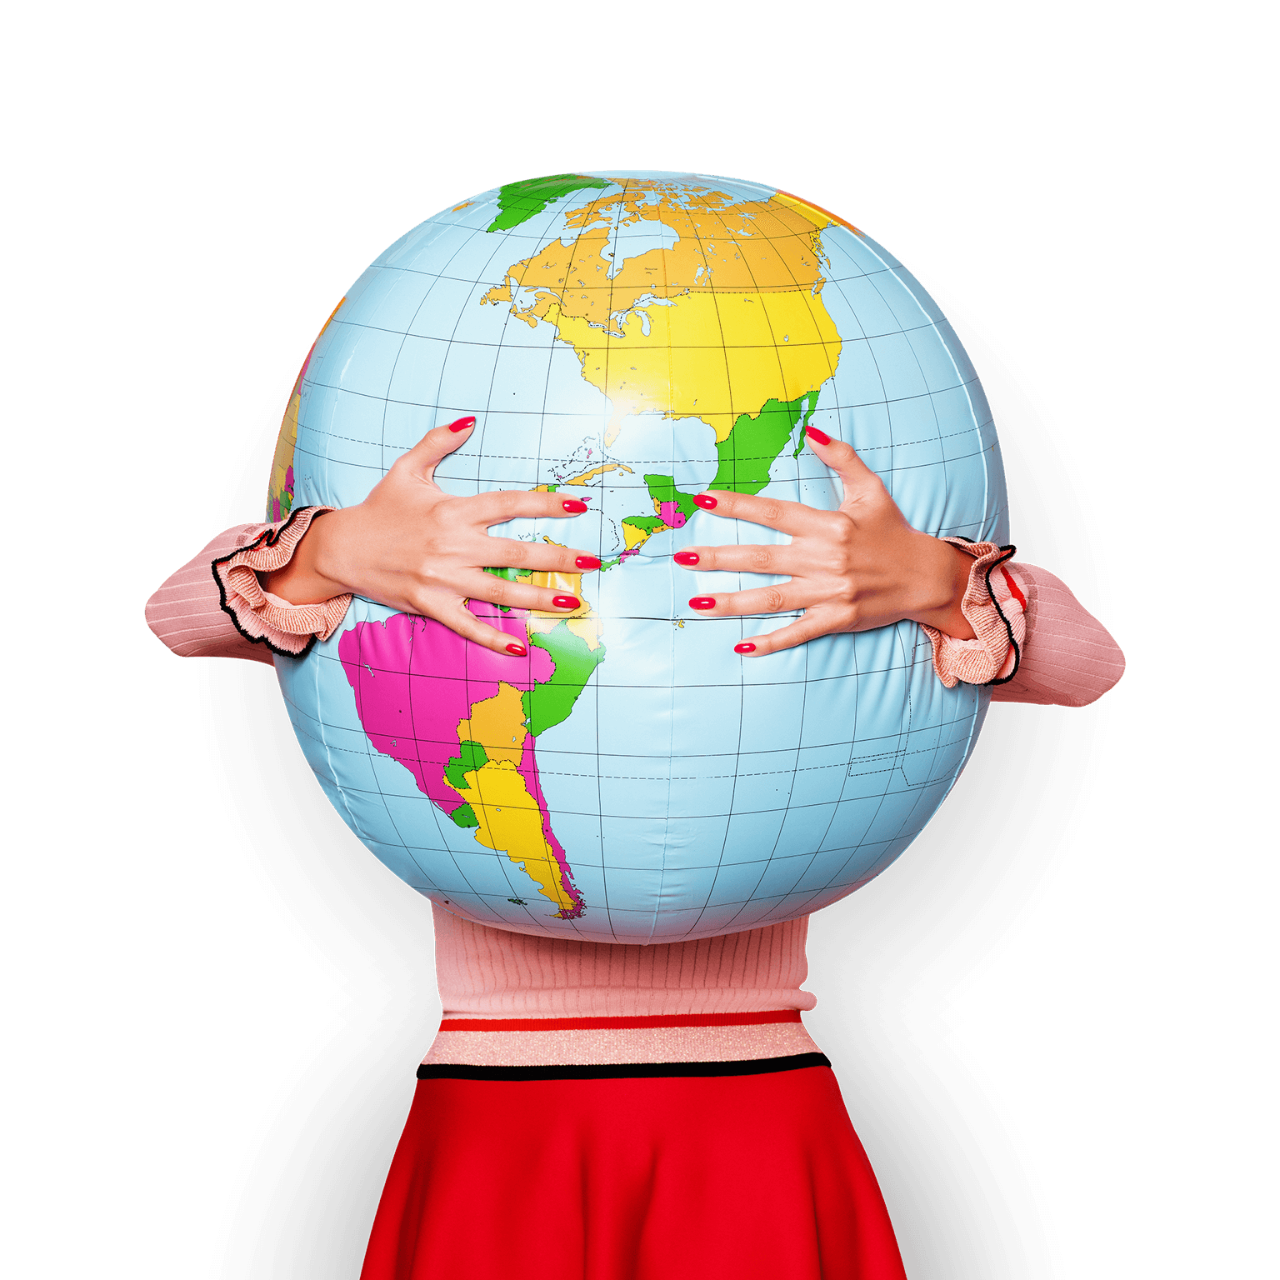 一个穿红裙子的女人抱着一个巨大的充气地球仪.